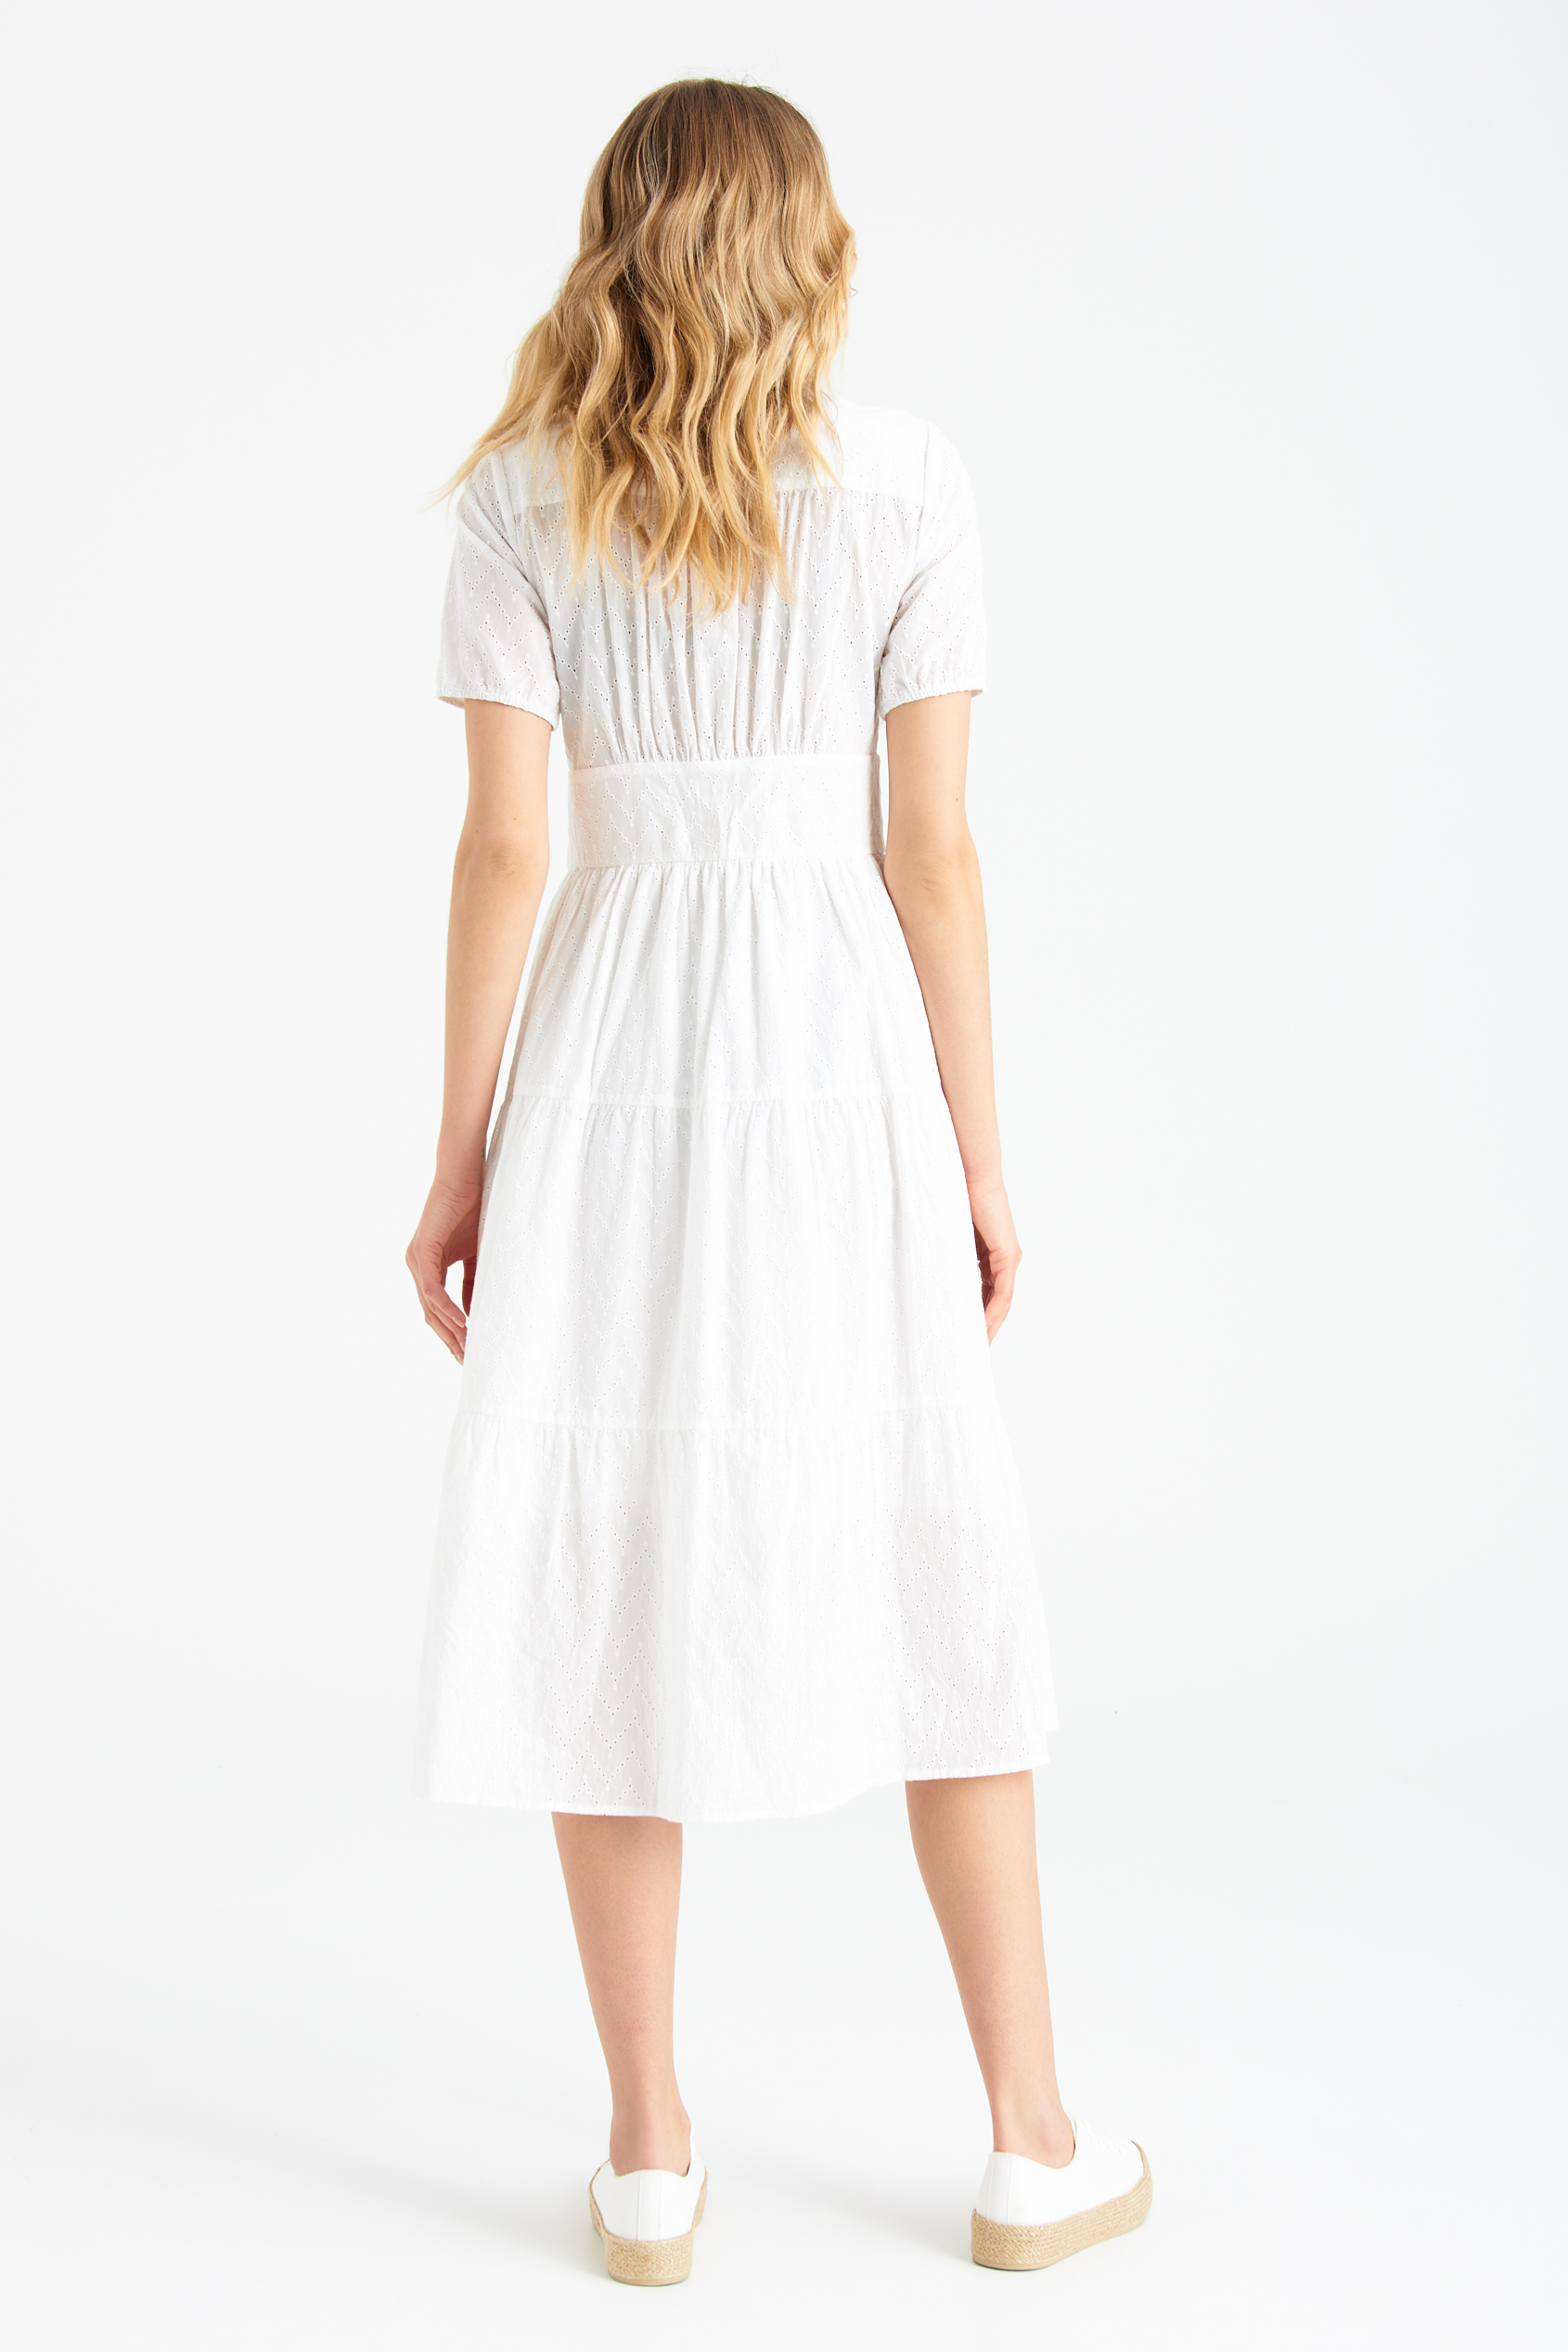 Biała, ażurowa sukienka midi